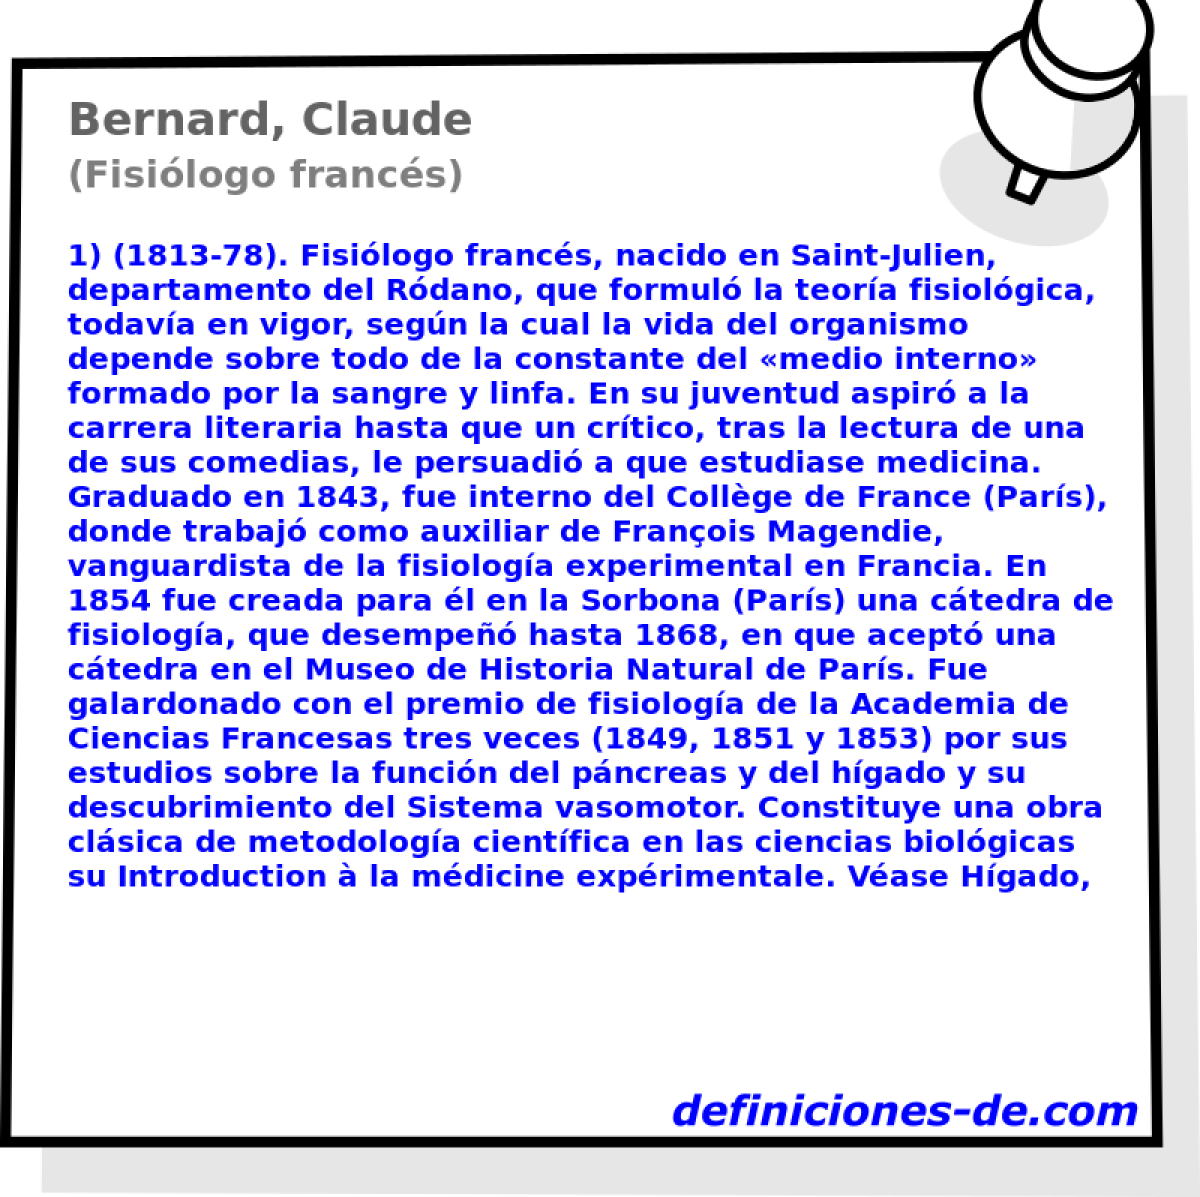 Bernard, Claude (Fisilogo francs)